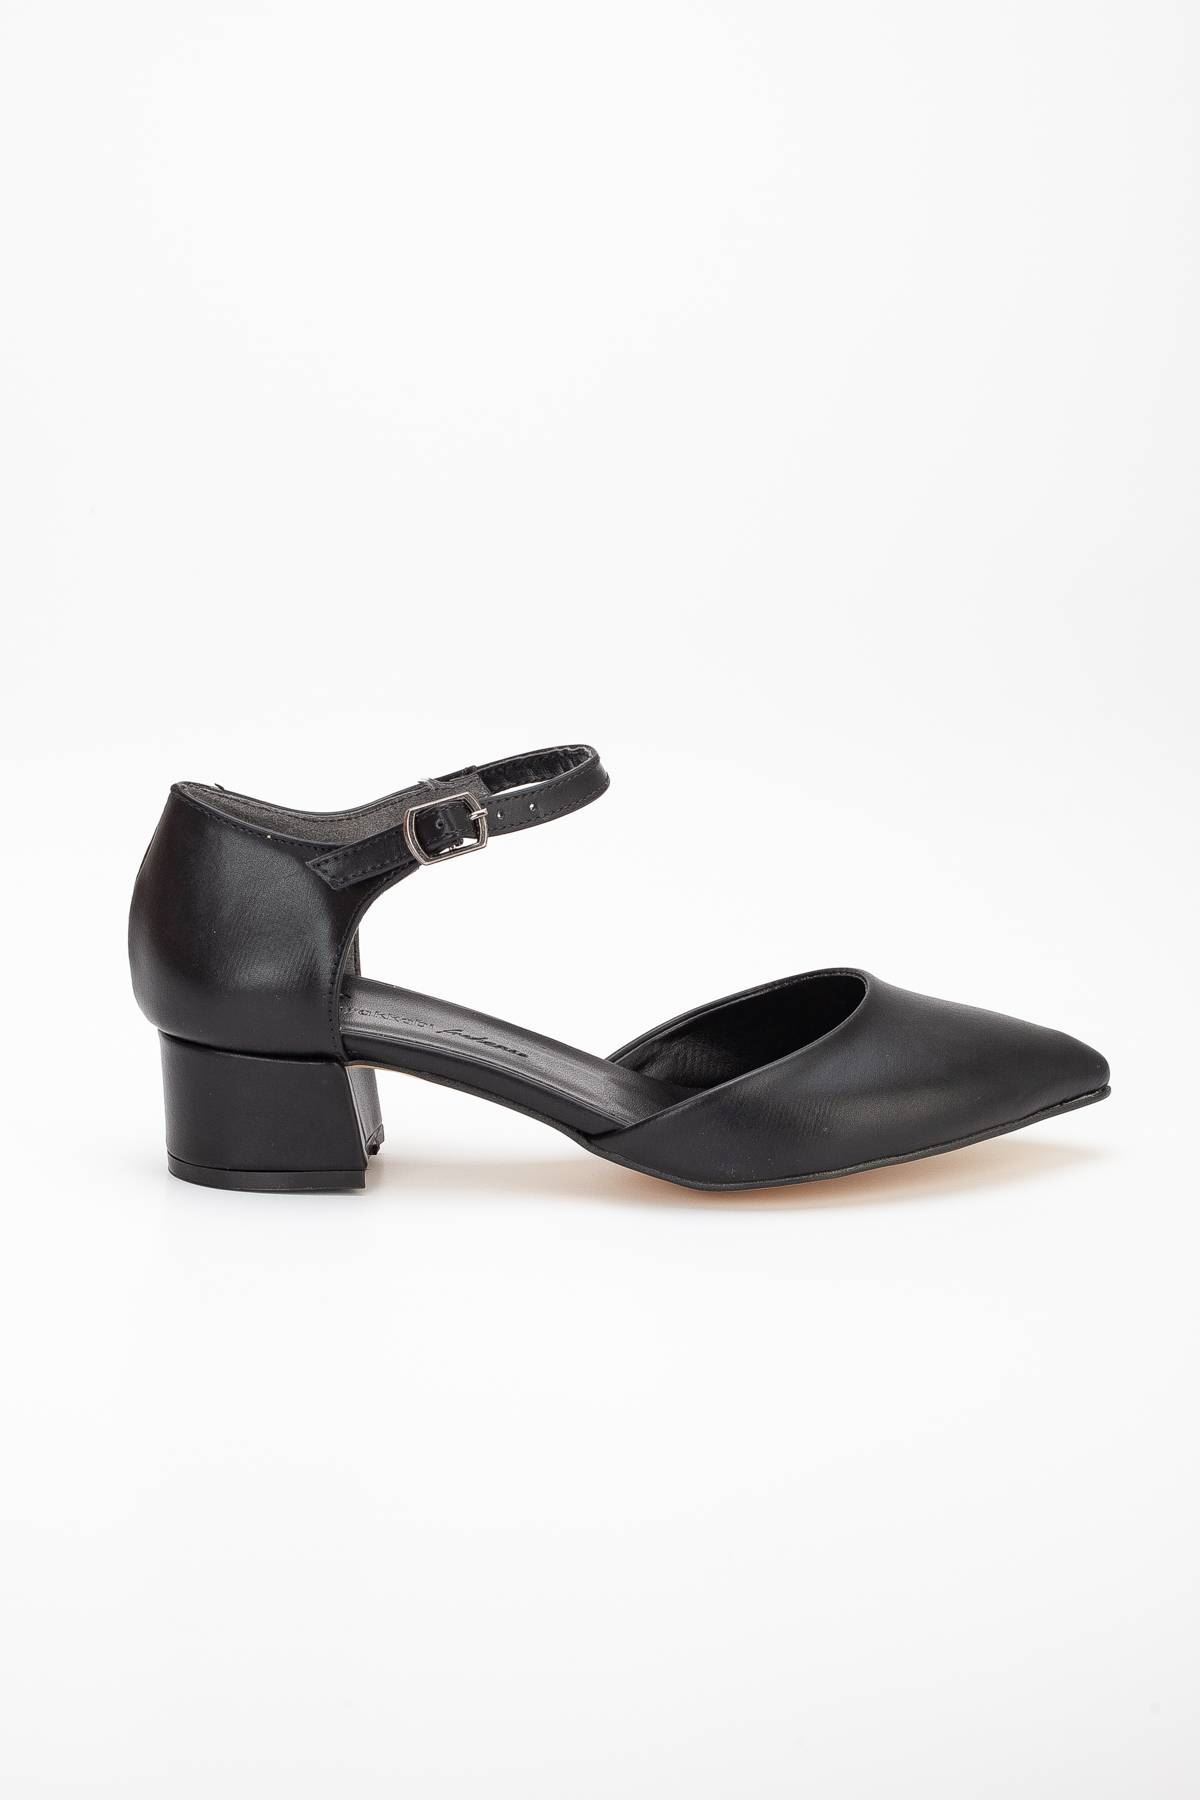 Jewel Kadın Topuklu Ayakkabı Siyah Cilt